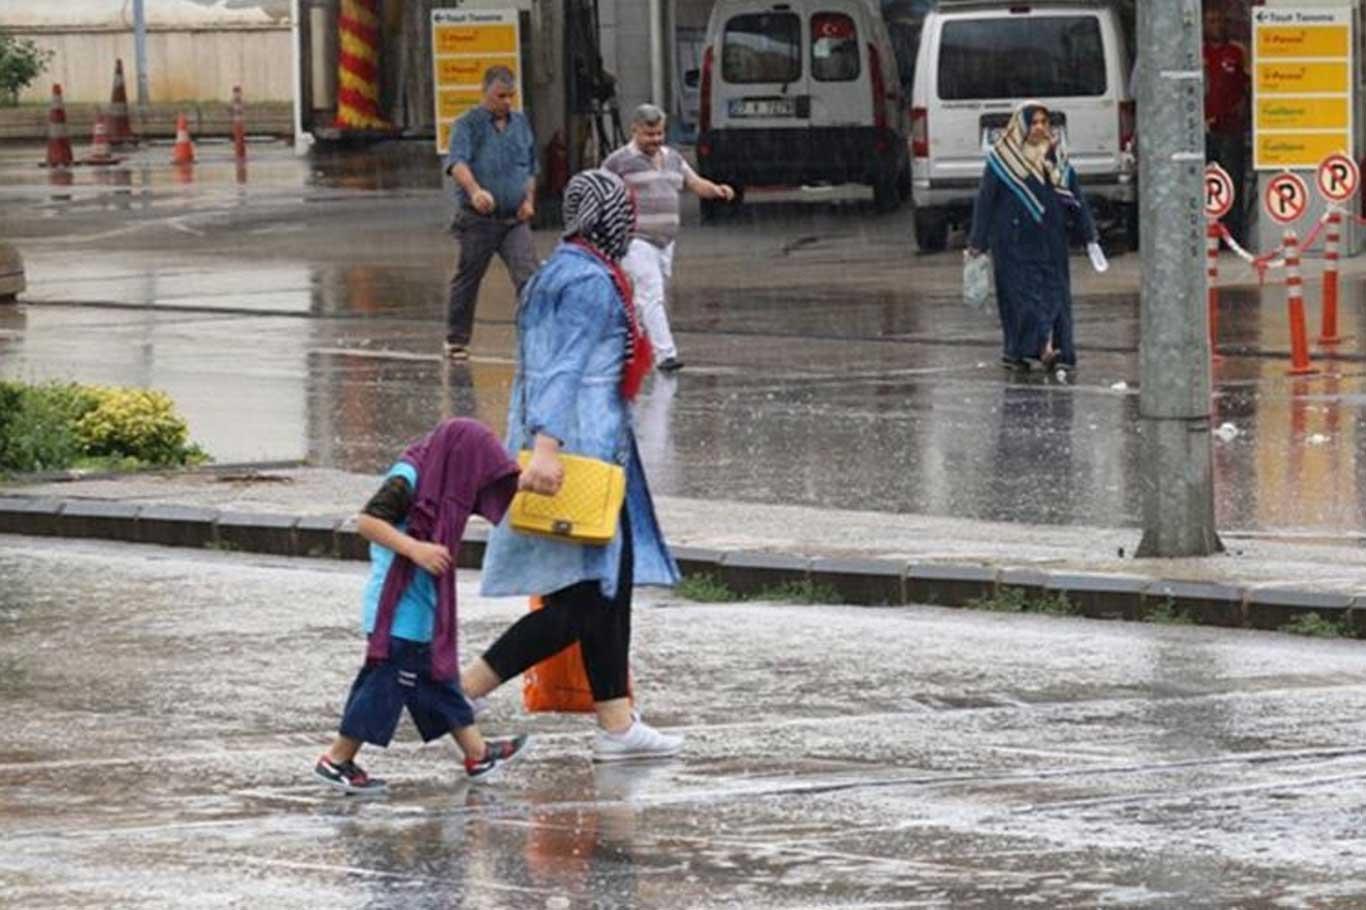 Gaziantep'te şiddetli yağış hazırlıksız yakaladı